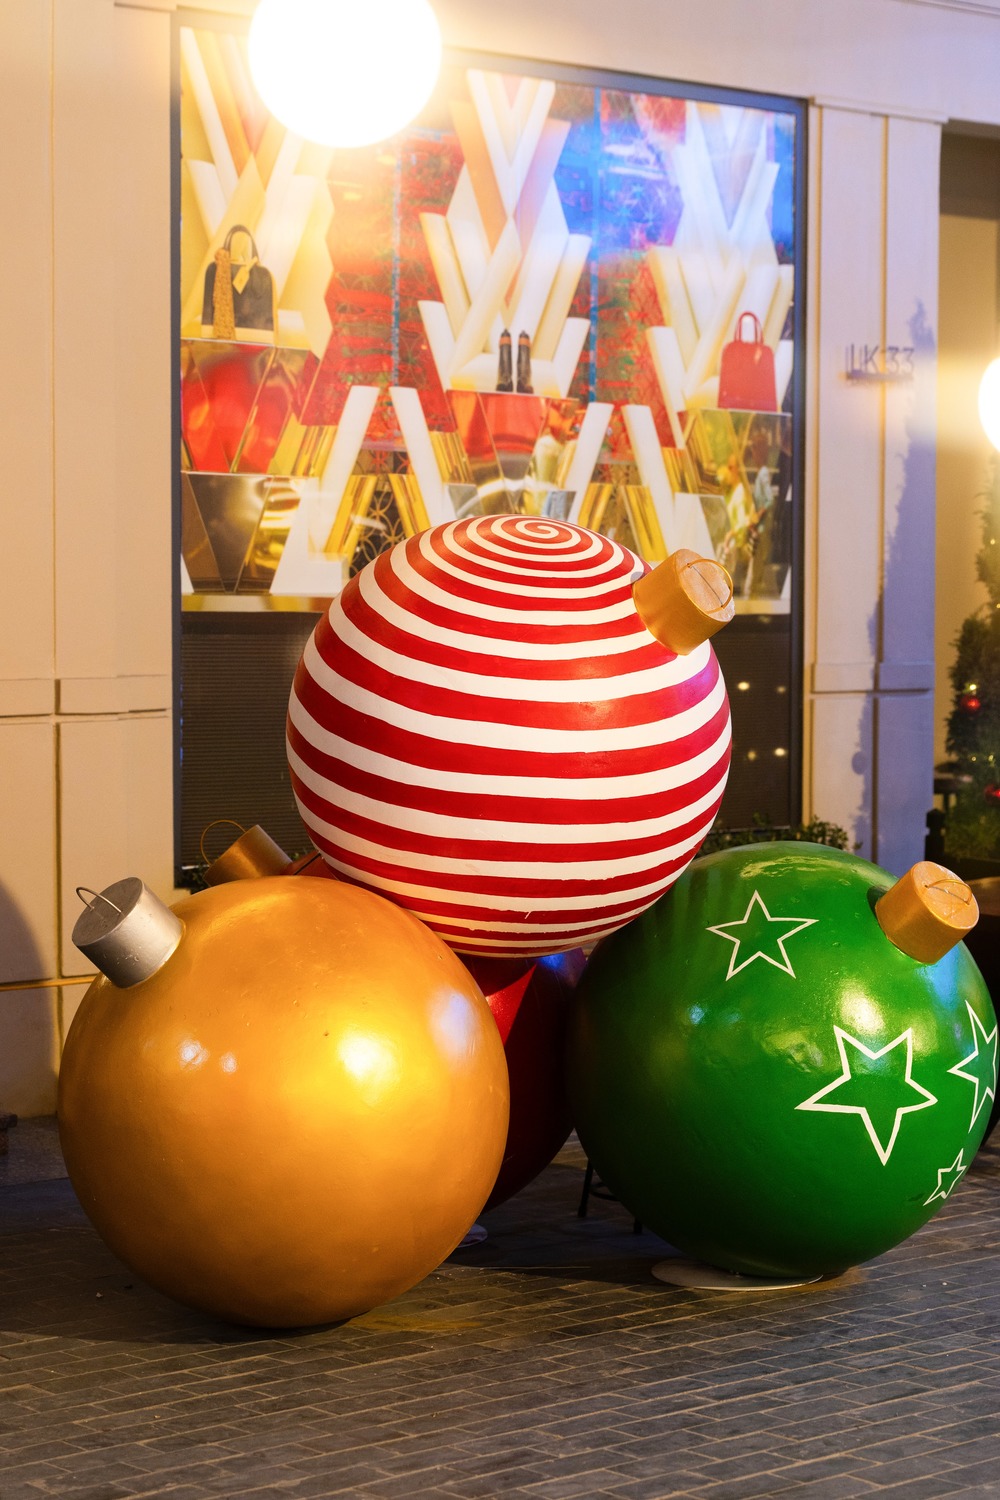  
Những quả châu Noel khổng lồ - Nguồn ảnh – Golden Link​